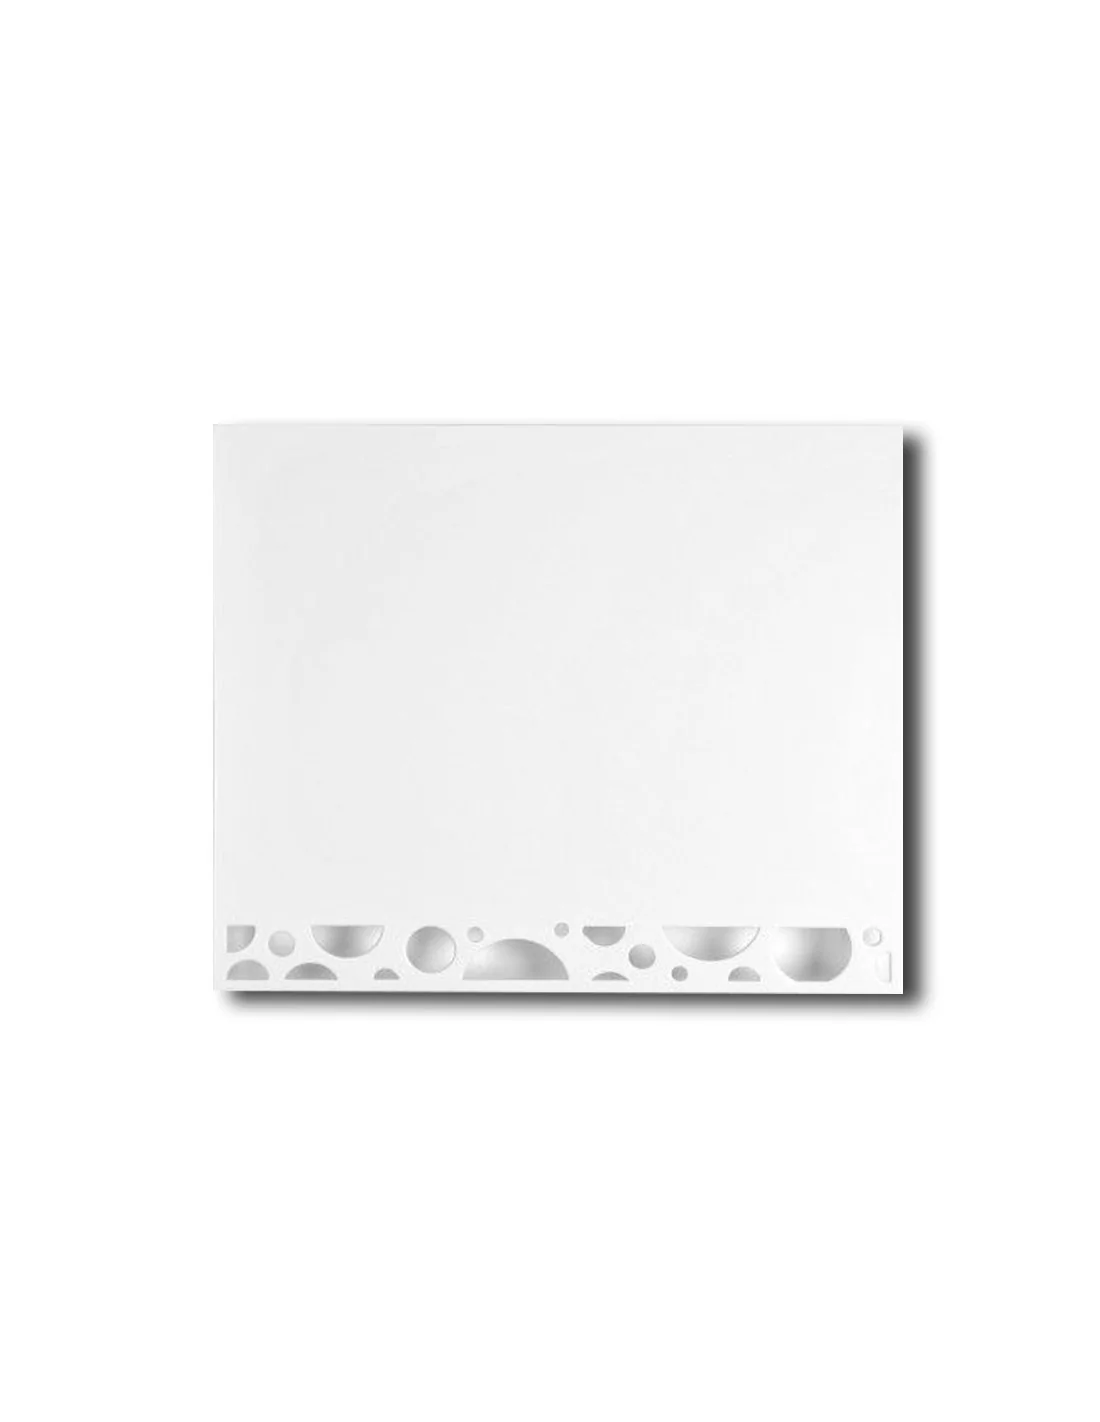 Tapa contador agua 600x360 blanca - Expocanal